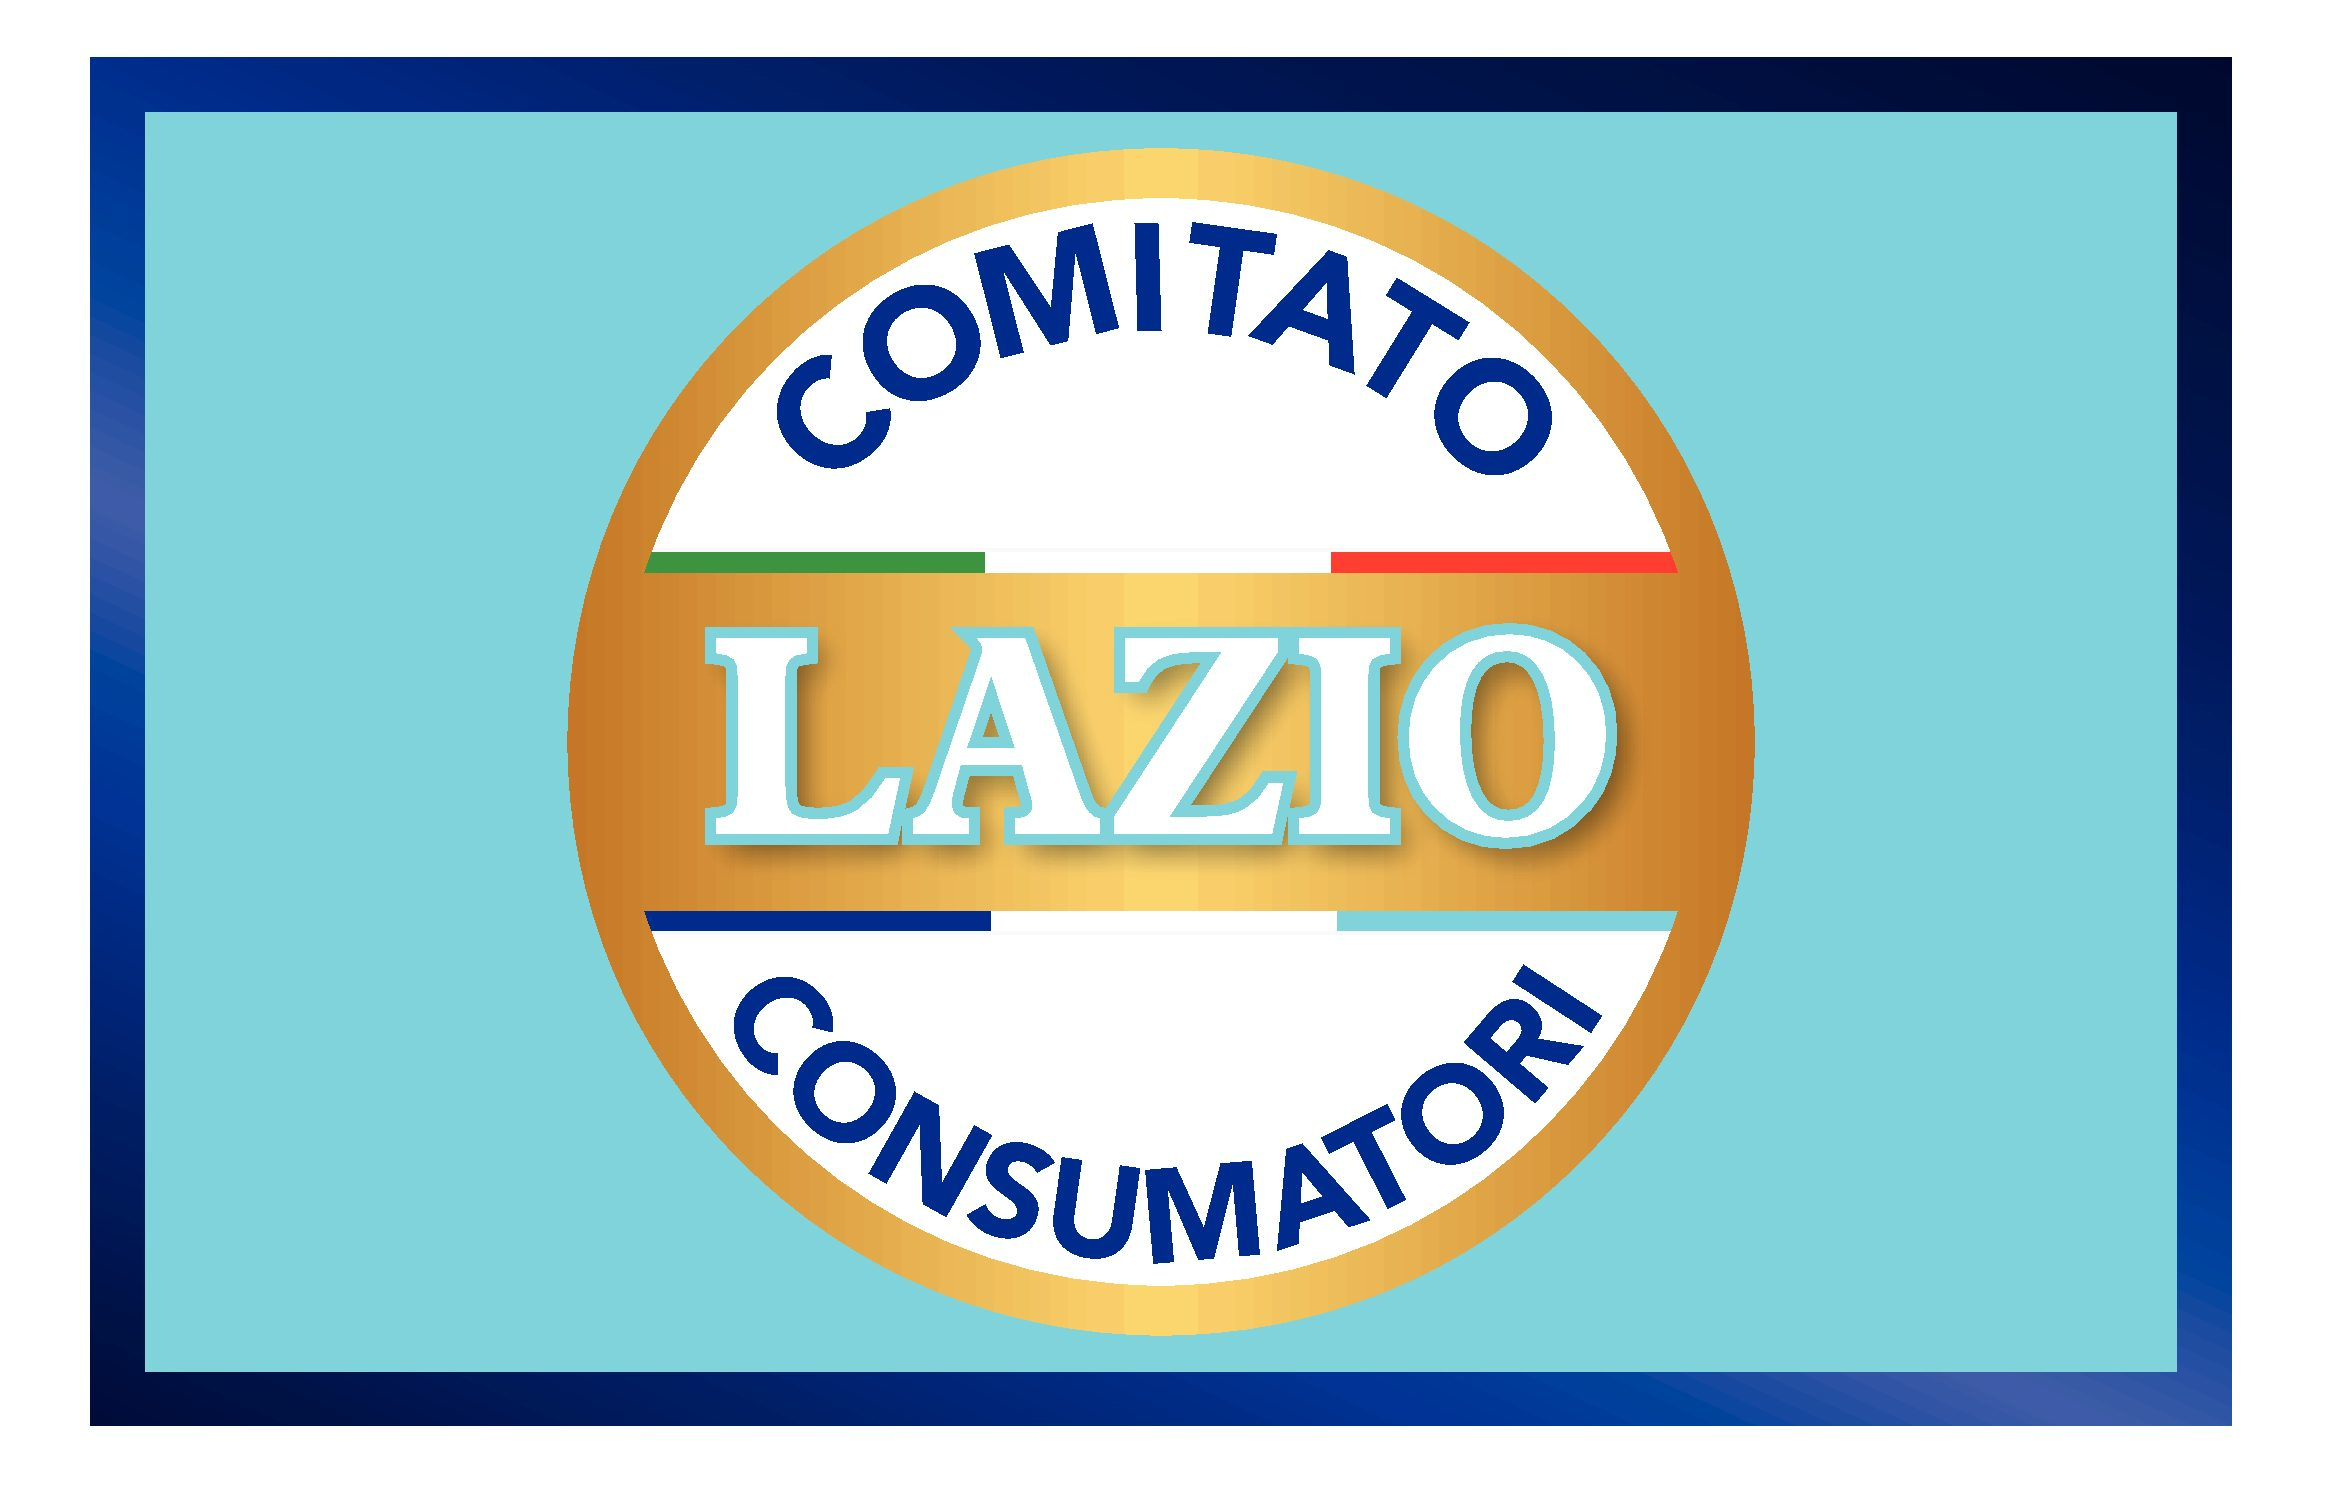 Class action | Comitato Consumatori Lazio: sabato 17 febbraio la convention con gli aderenti